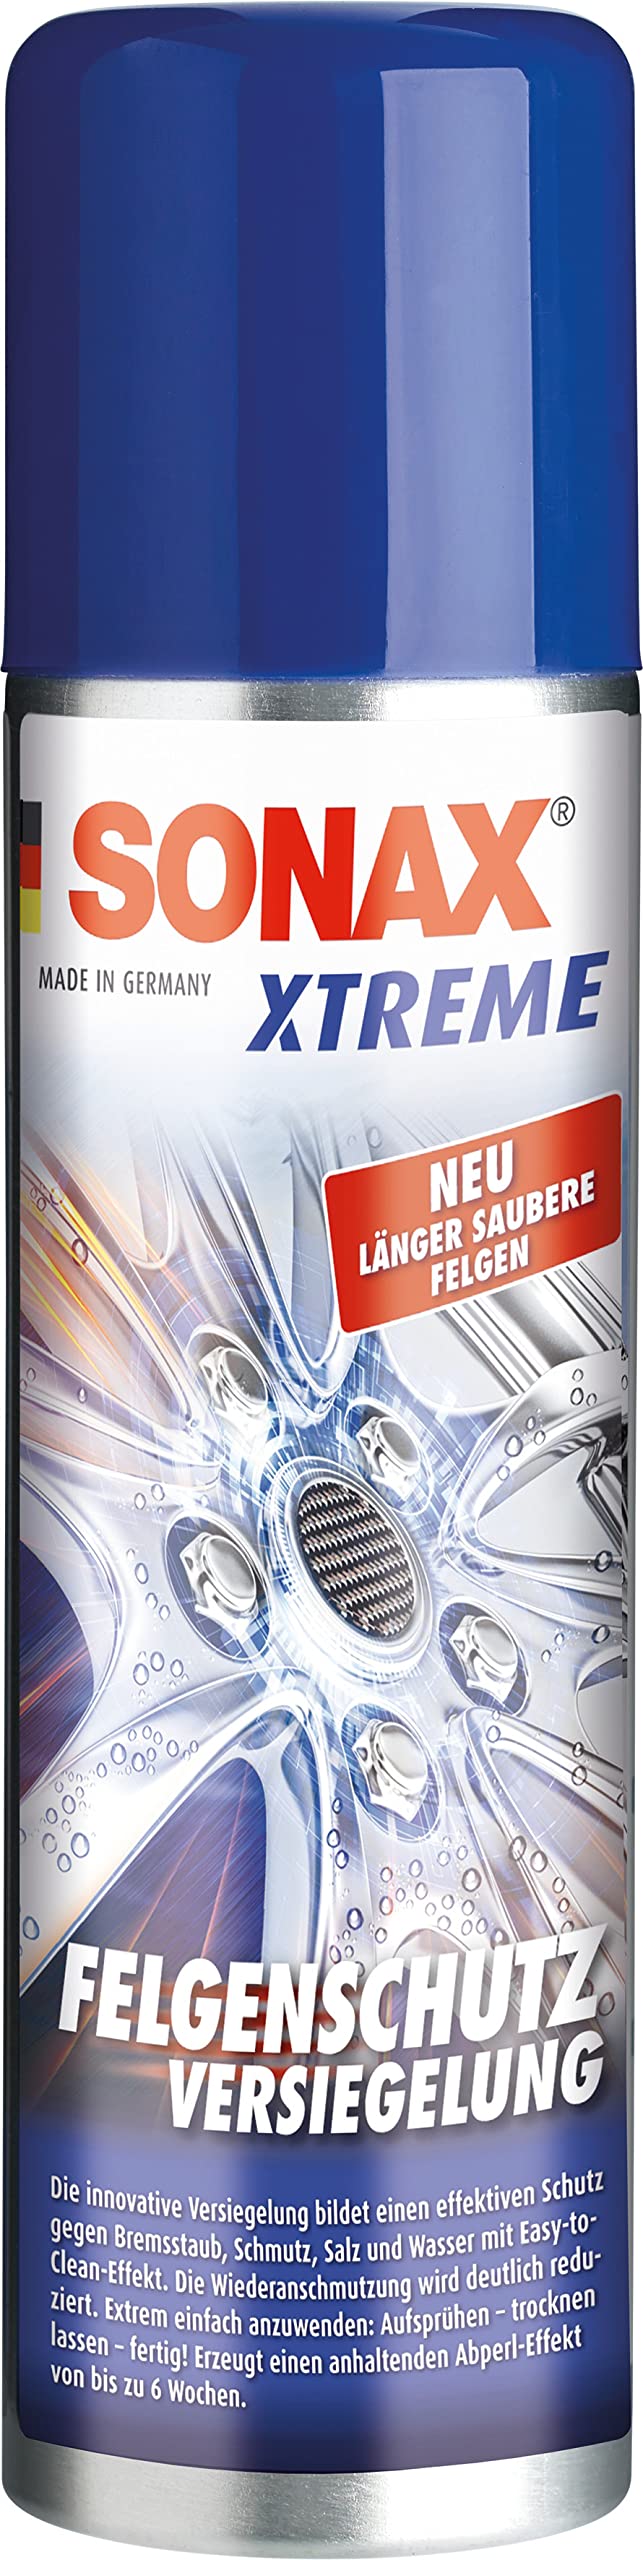 SONAX XTREME FelgenSchutzVersiegelung (250 ml) bildet einen effektiven Schutz gegen Bremsstaub, Schmutz, Salz & Wasser mit Easy-to- Clean-Effekt | Art-Nr. 02501000 von SONAX